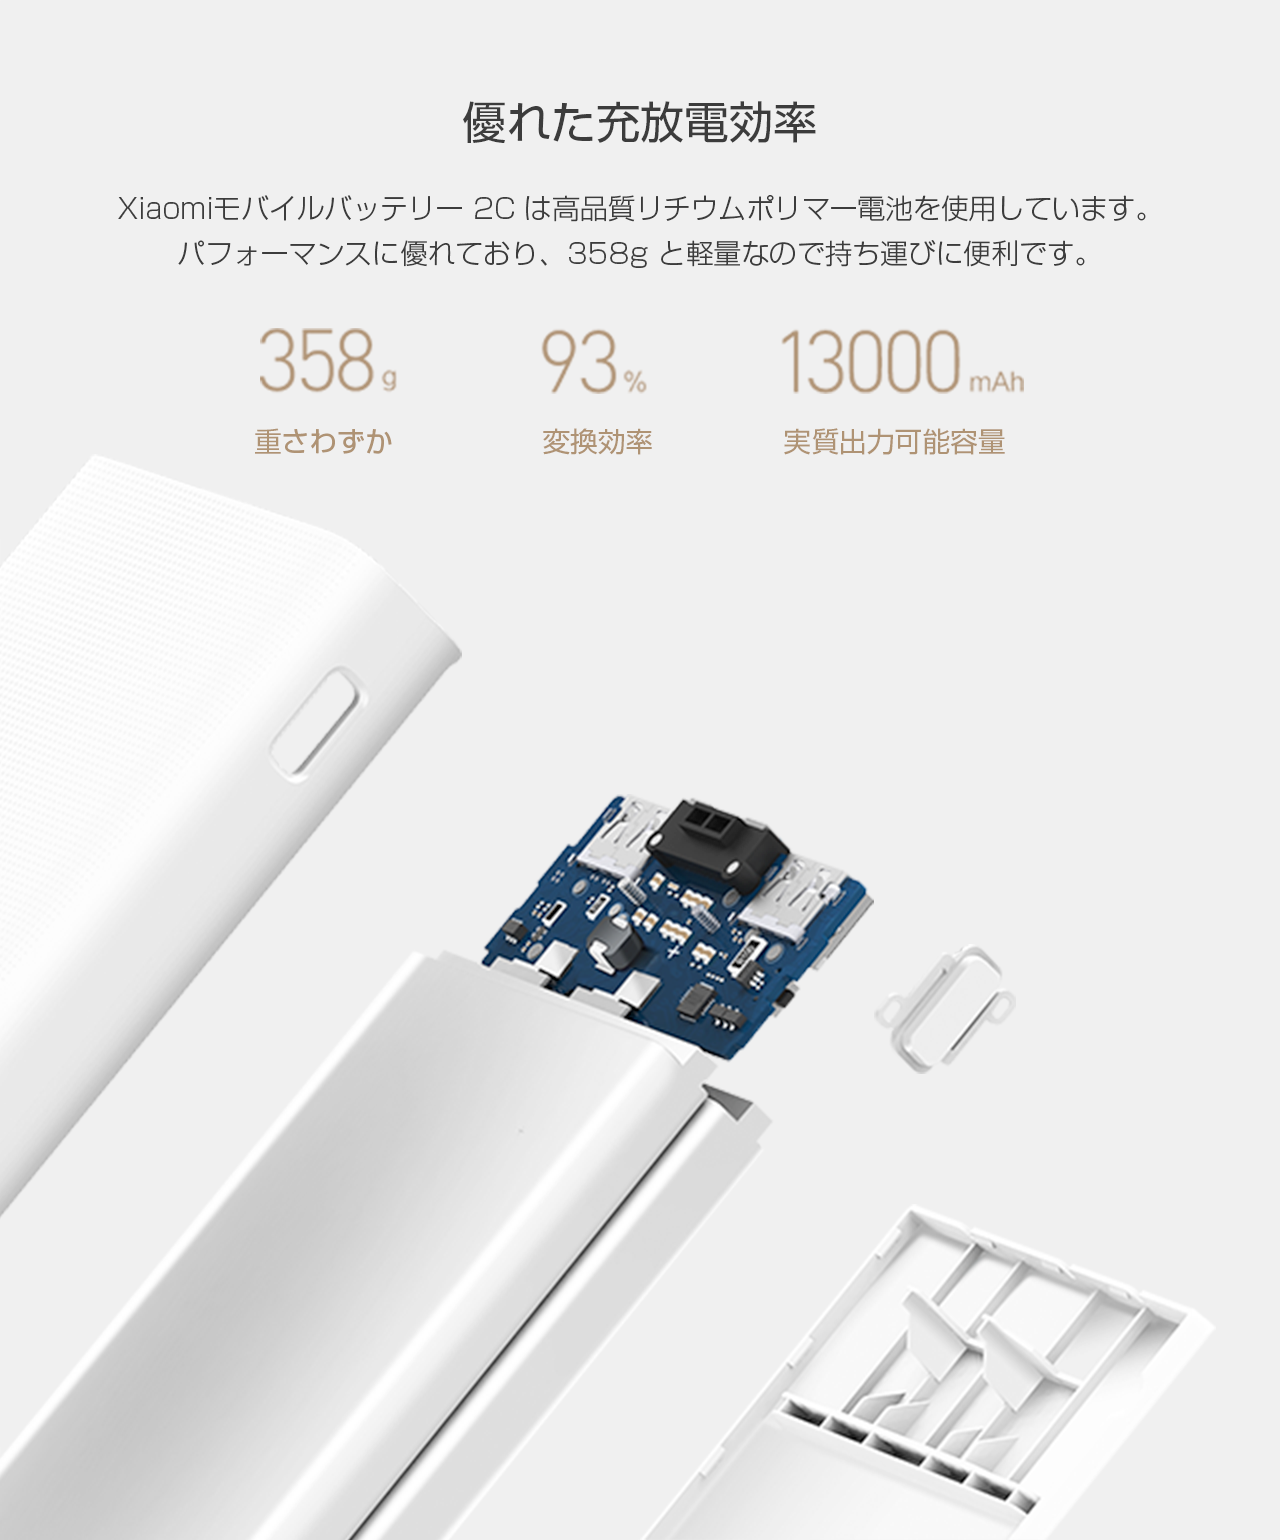 新型000mah 2c モバイルバッテリー Tjc株式会社 Xiaomi日本唯一の正規代理店